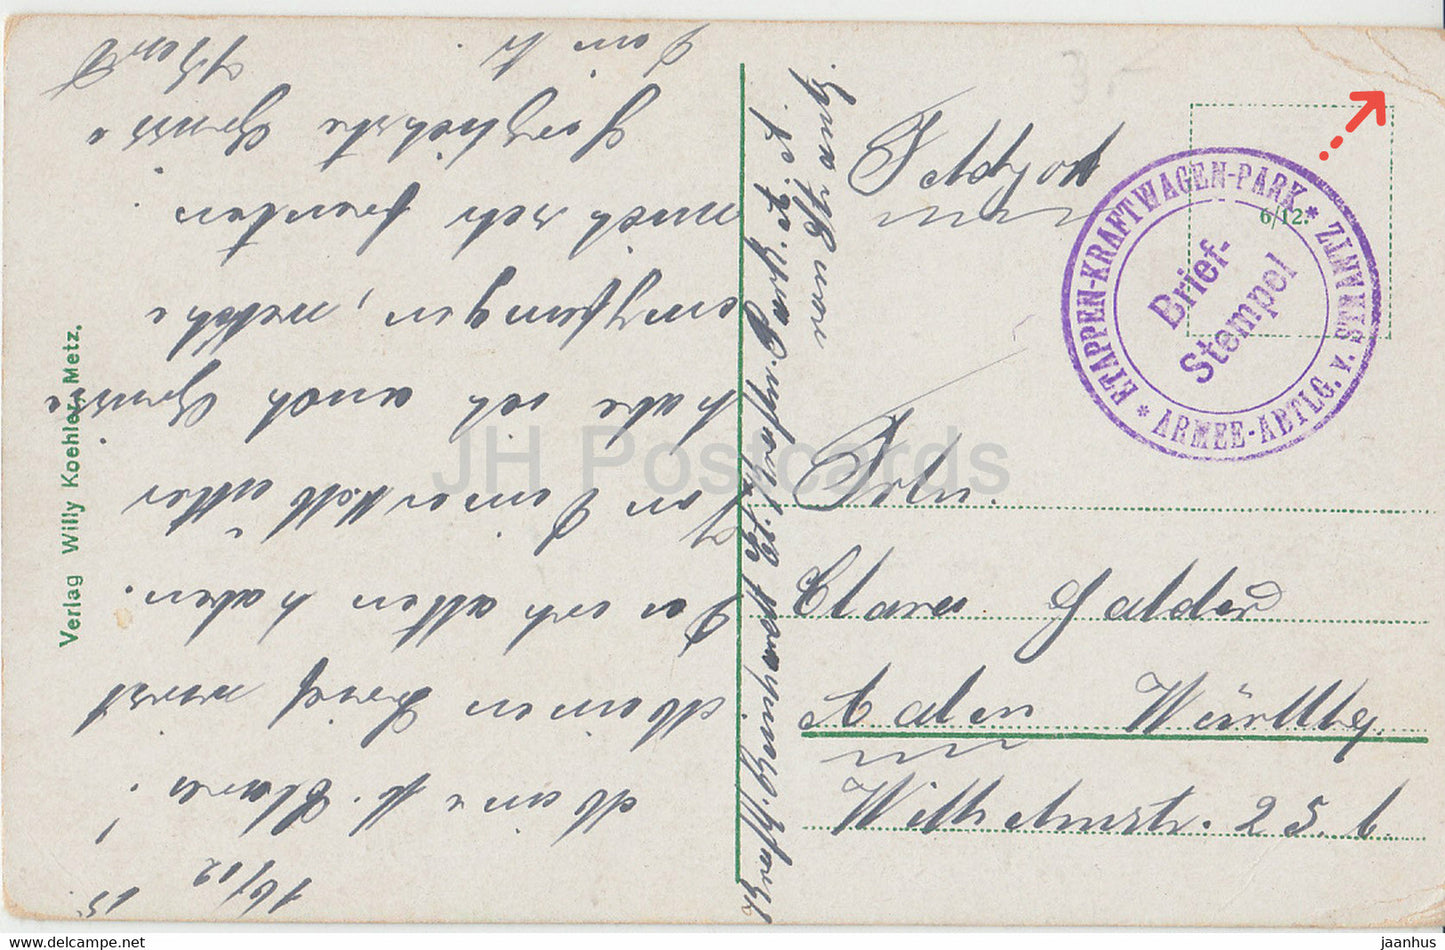 Metz - Generalkommando - Etappen Kraftwagen Park - Feldpost - carte postale ancienne - 1915 - France - occasion